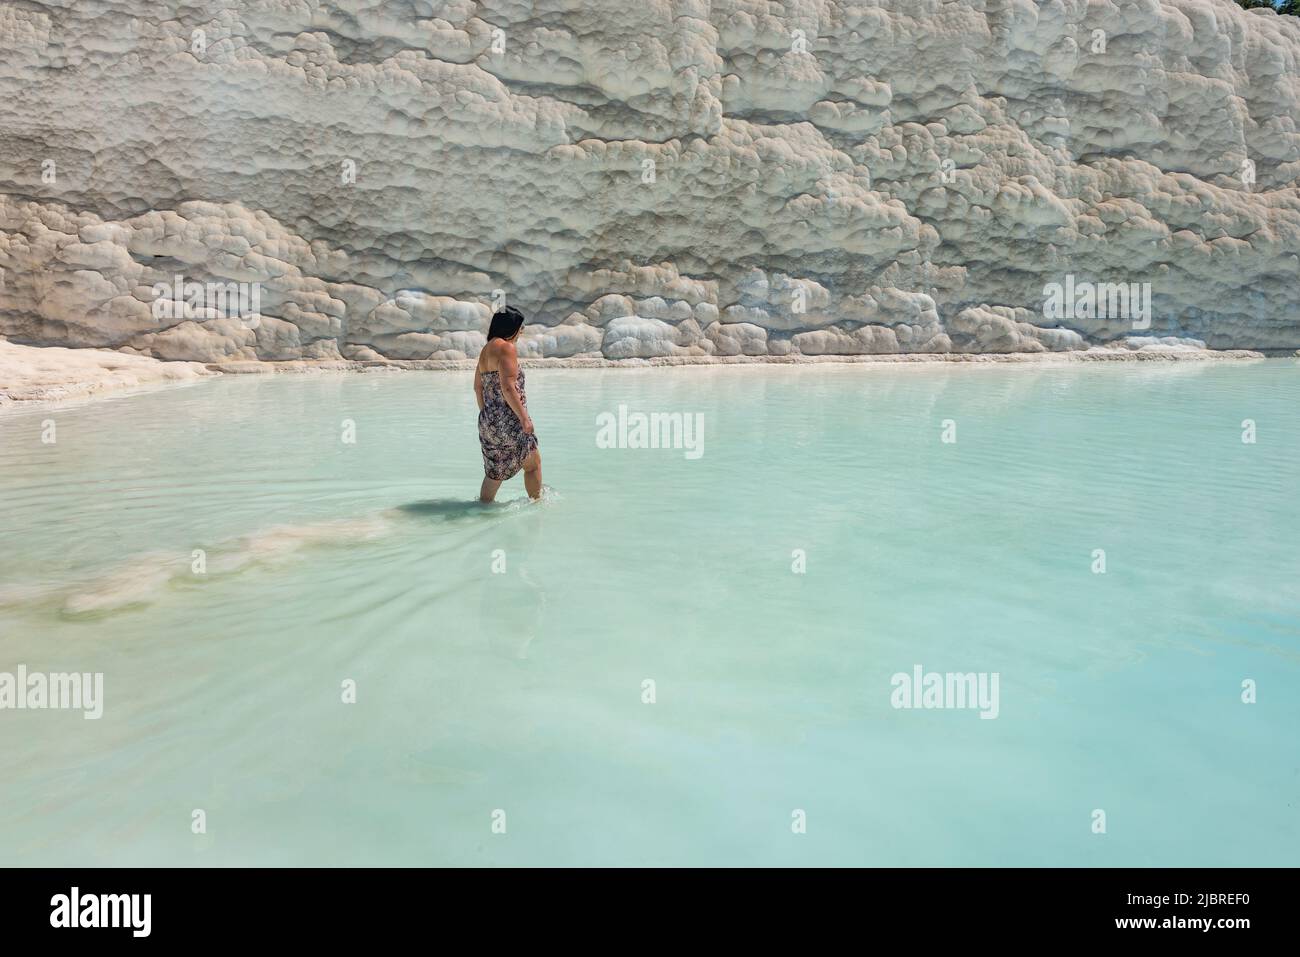 Pamakkule, Turquie, 25 avril 2020 Un touriste s'imprégner ses pieds dans les eaux thermales des terrasses Travertine de Pamukkale, le wat thermique riche en minéraux Banque D'Images